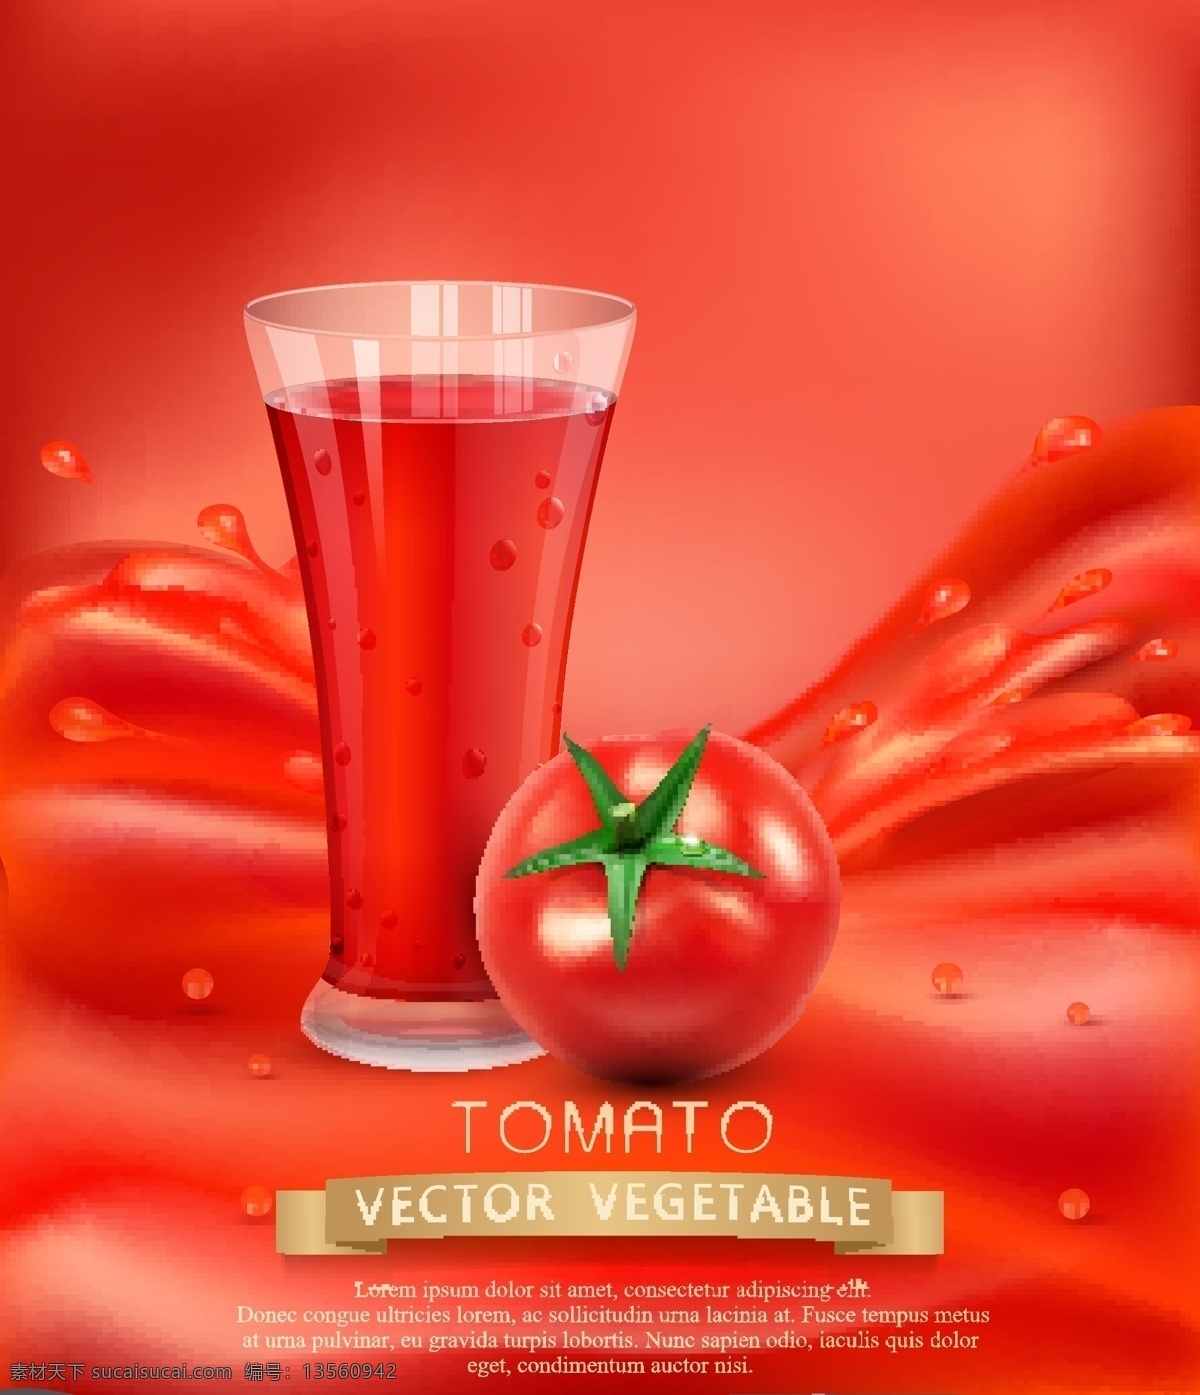 番茄汁 番茄 西红柿 鲜榨番茄汁 番茄汁广告 海报 现榨番茄汁 饮品